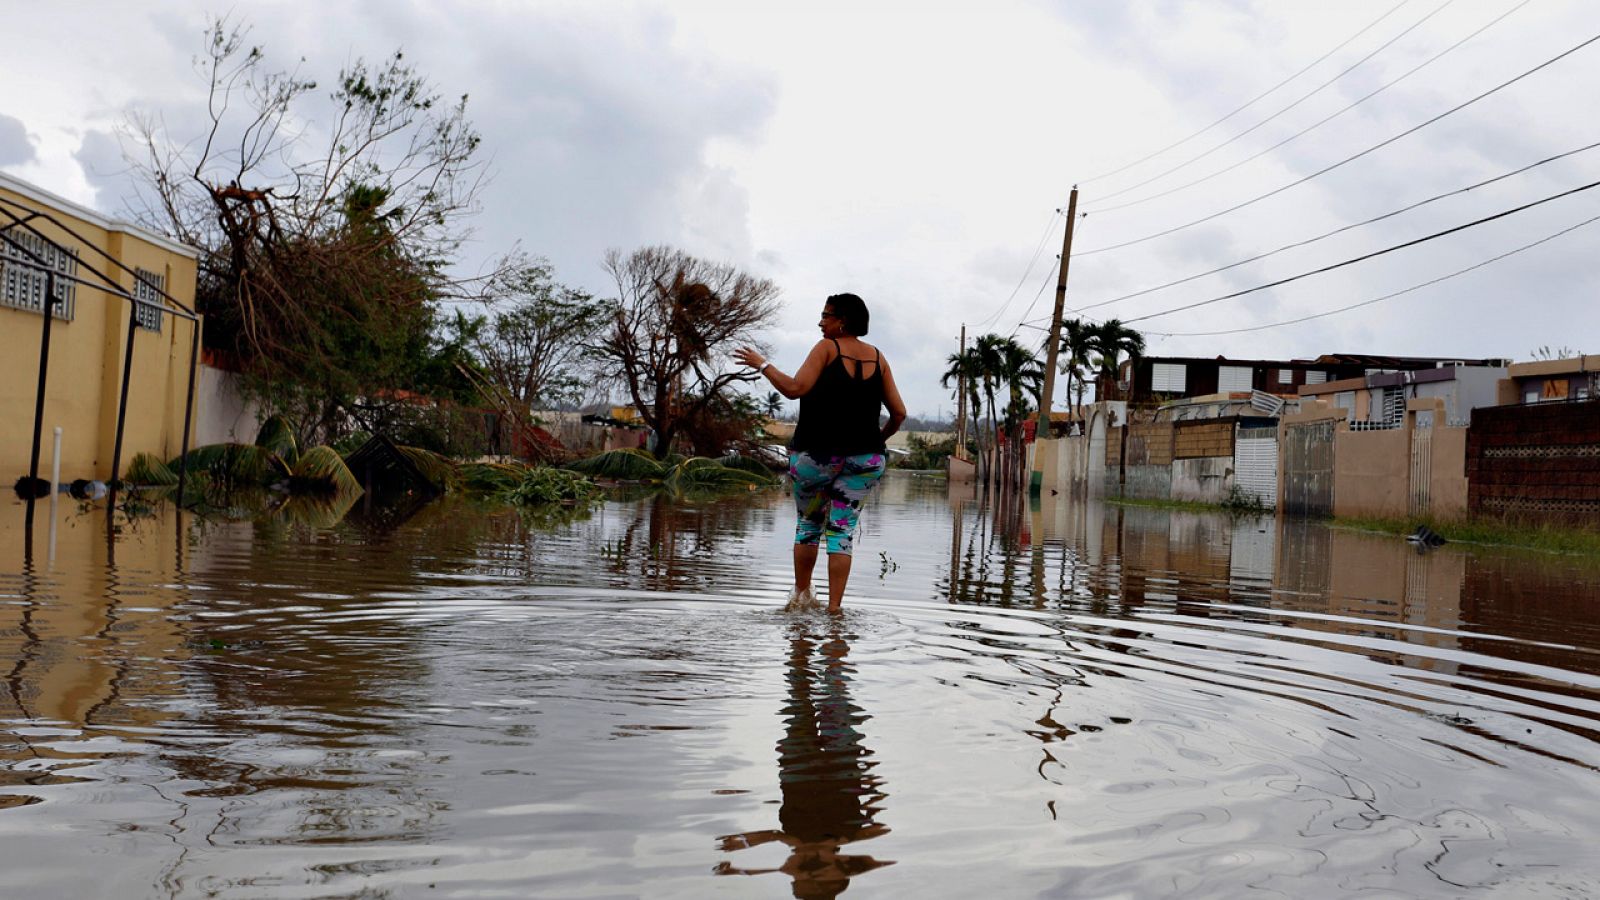 Una mujer cruza una calle inundada en Puerto Rico tras el paso del huracán María